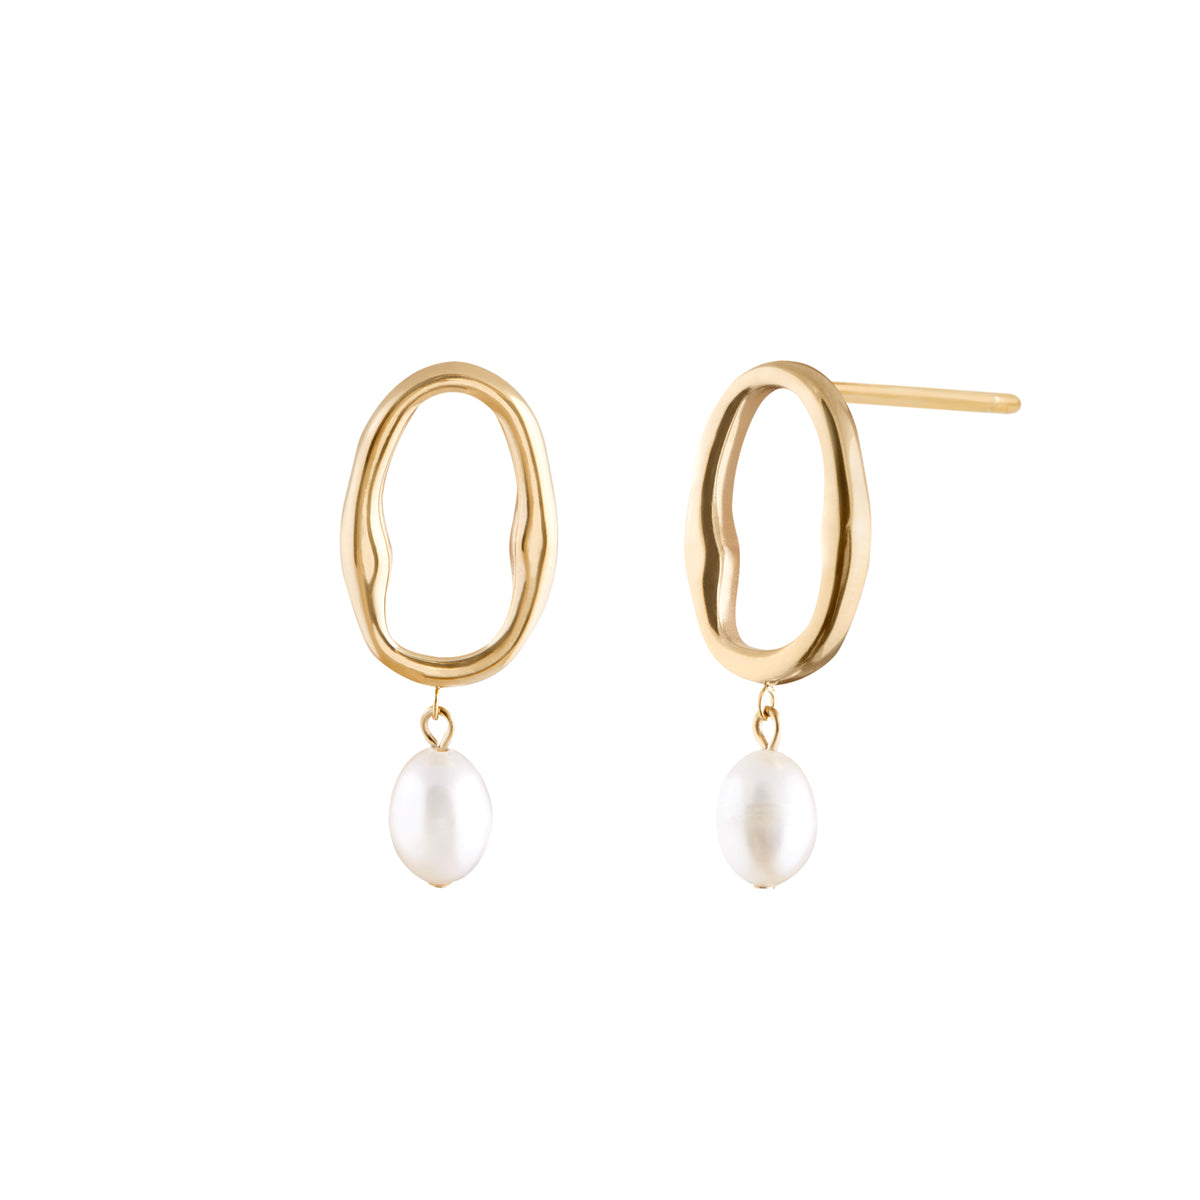 Dolce Vita Earrings - Gold Dolce Vita Earrings - Gold